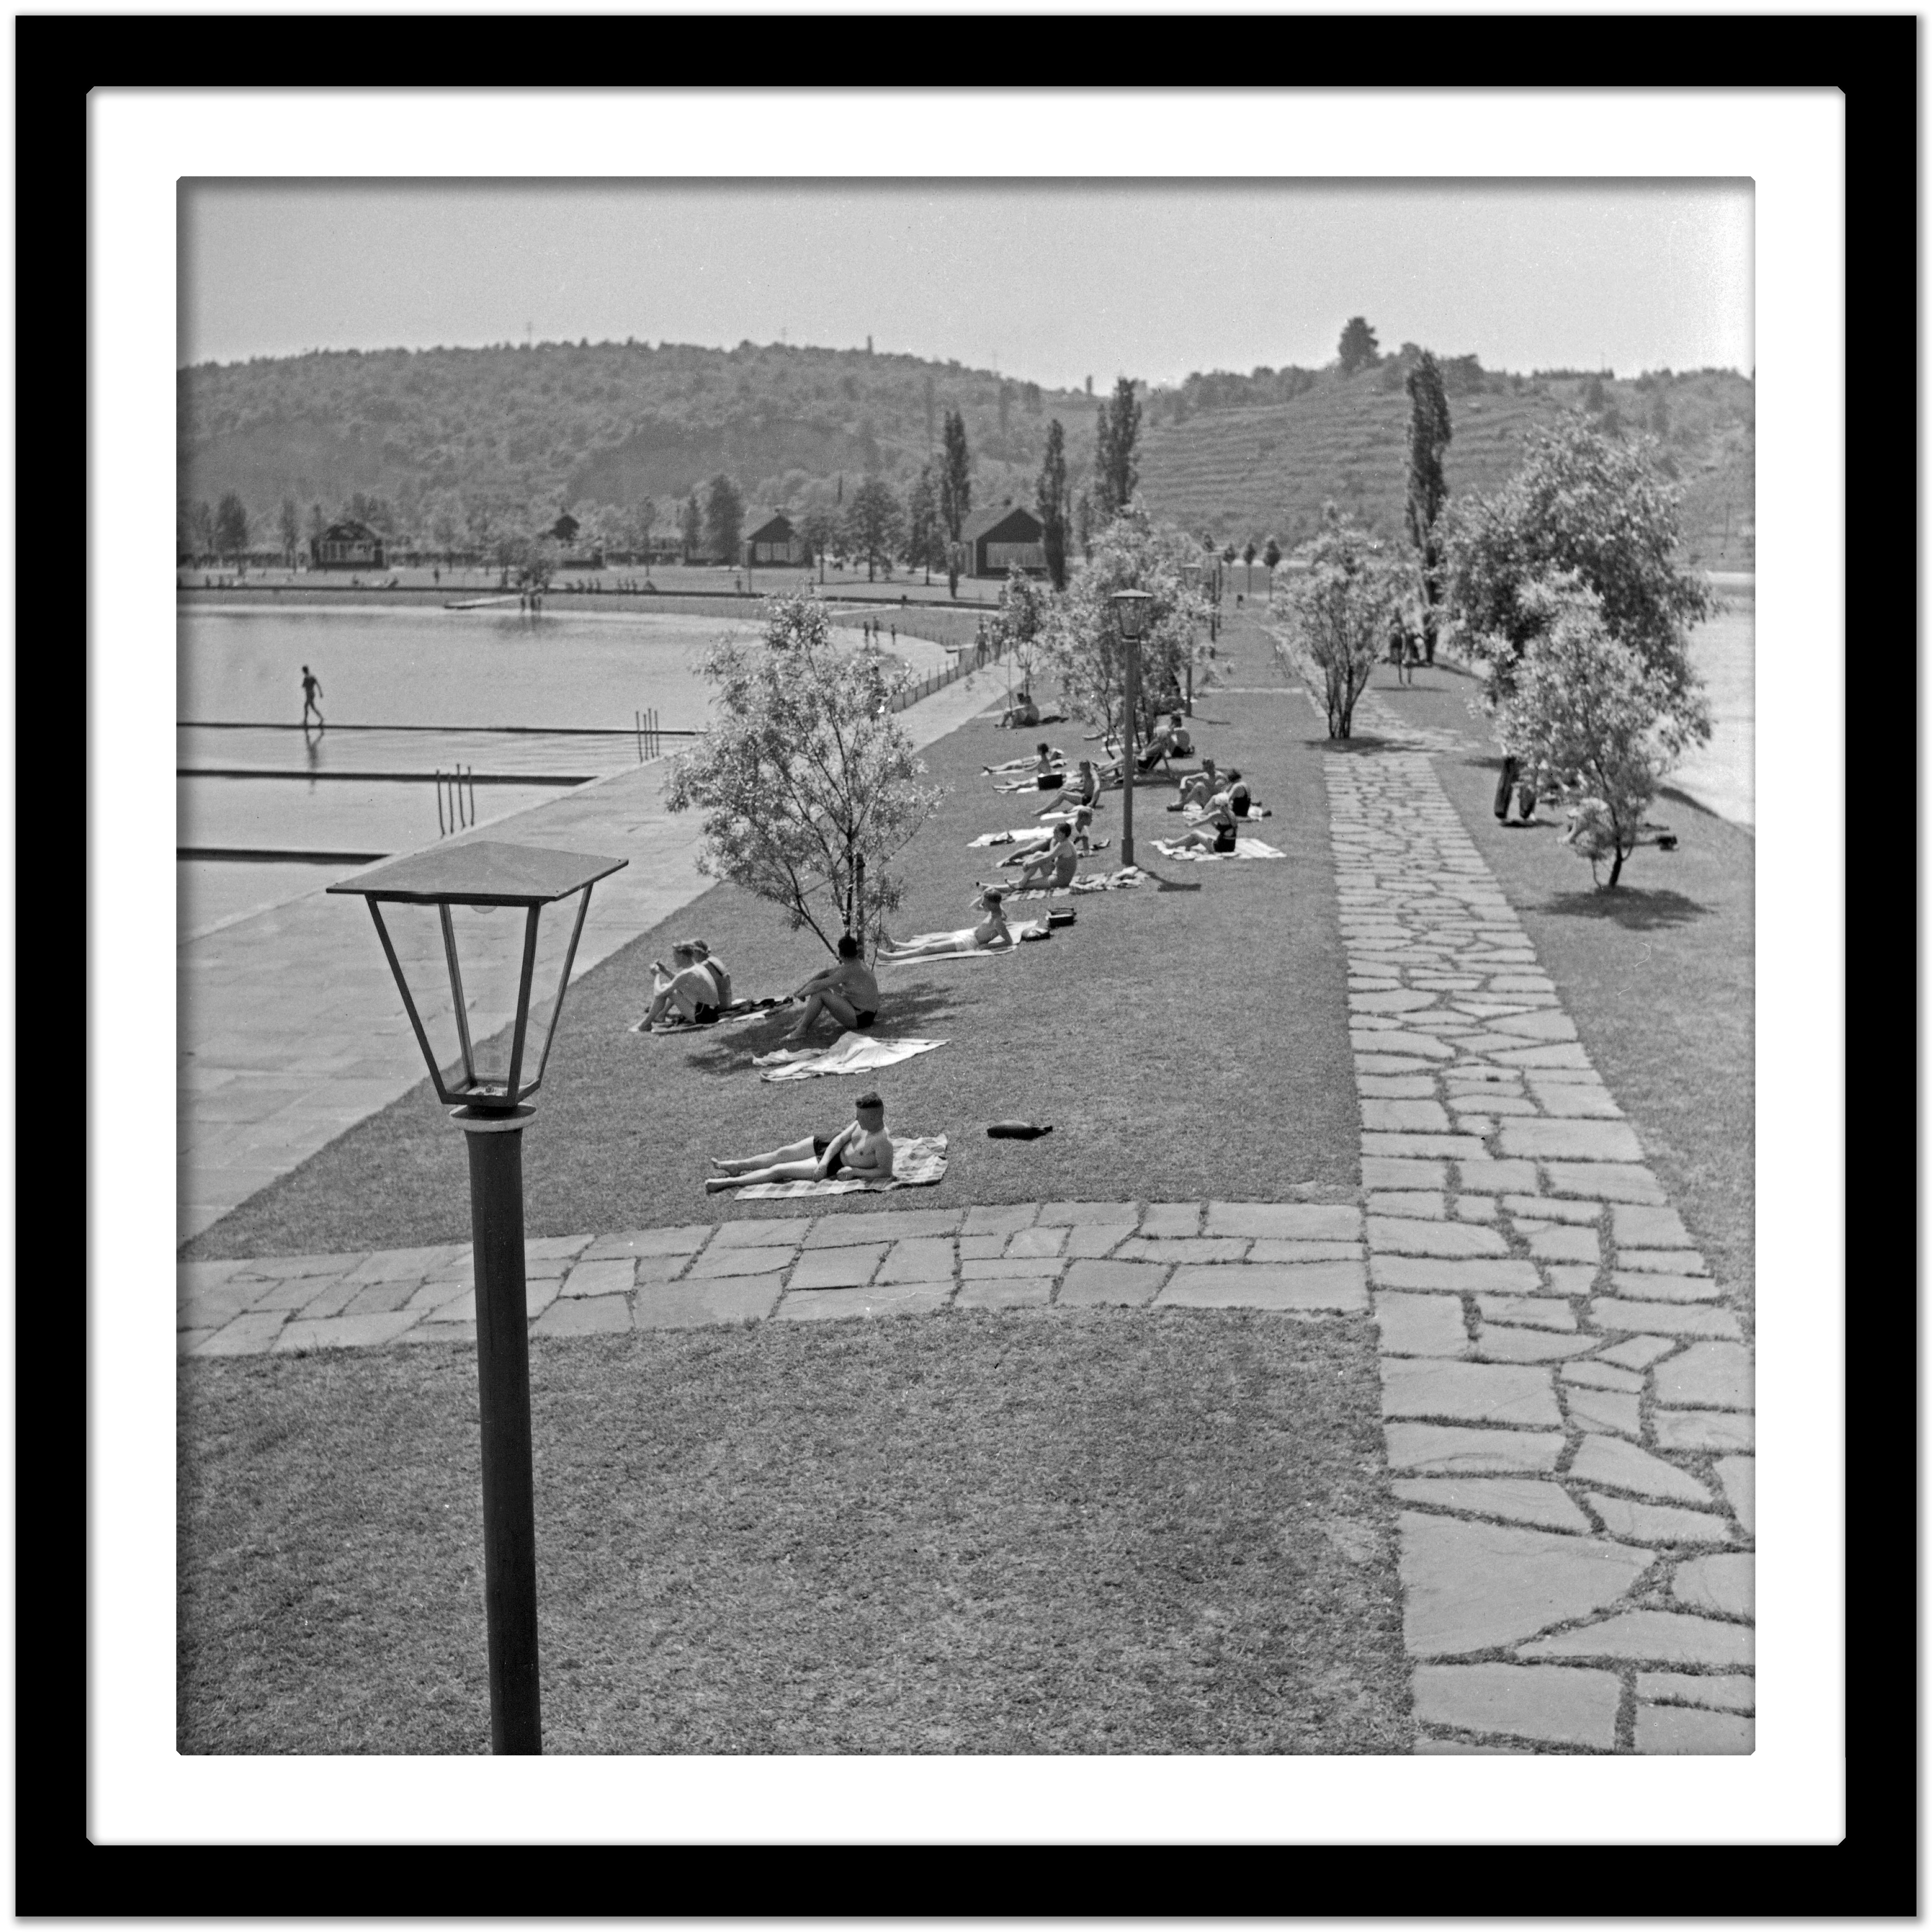 Sunbathers an der Küste des Max Eyth-Seees, Stuttgart, Deutschland 1935, Später gedruckt (Grau), Black and White Photograph, von Karl Heinrich Lämmel